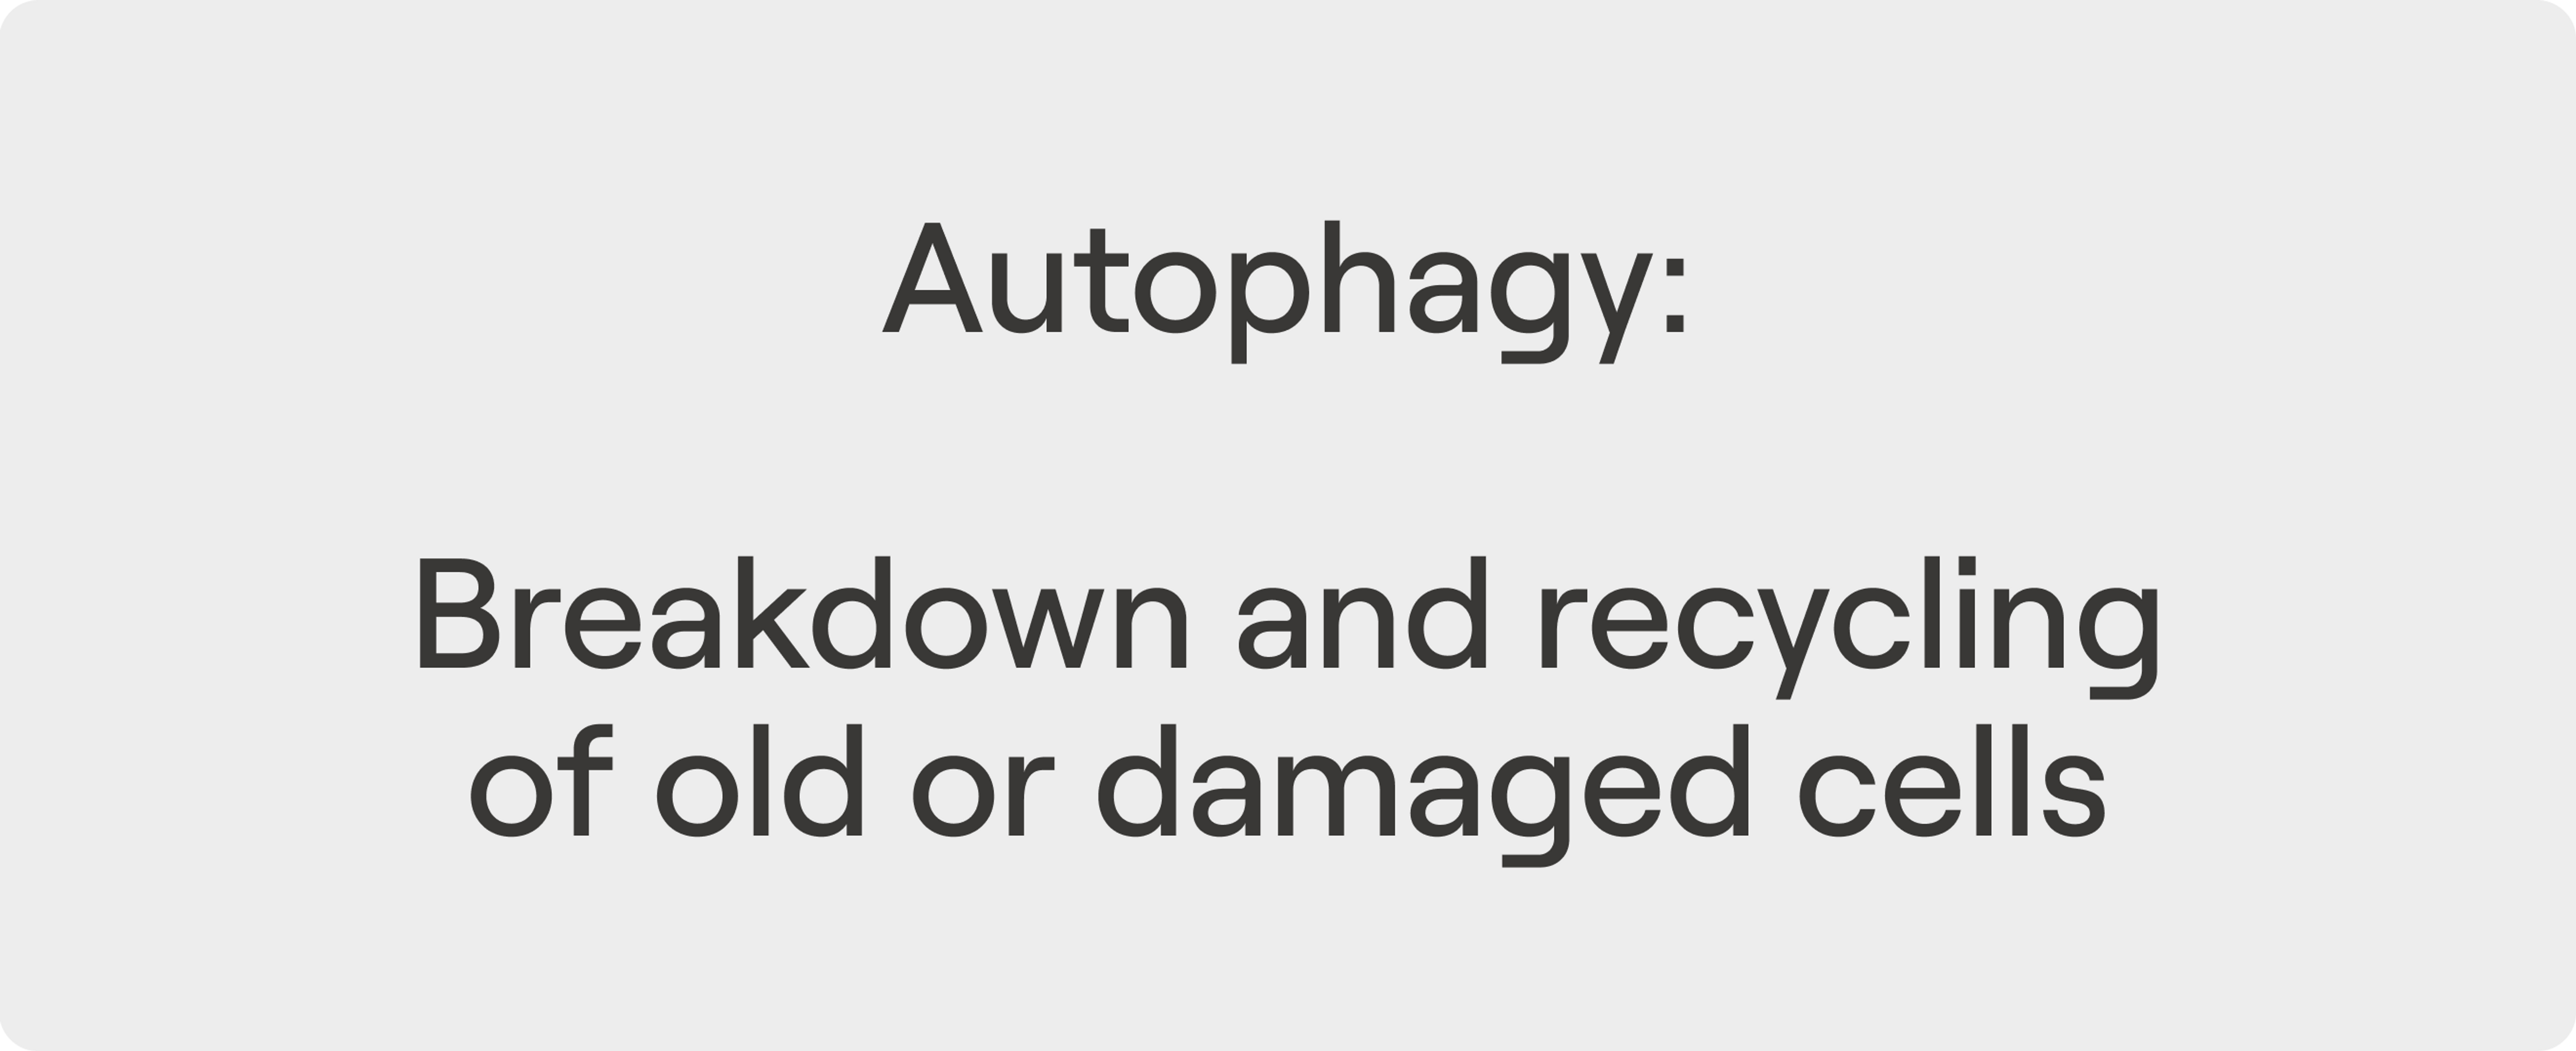 Autophagy - Definition